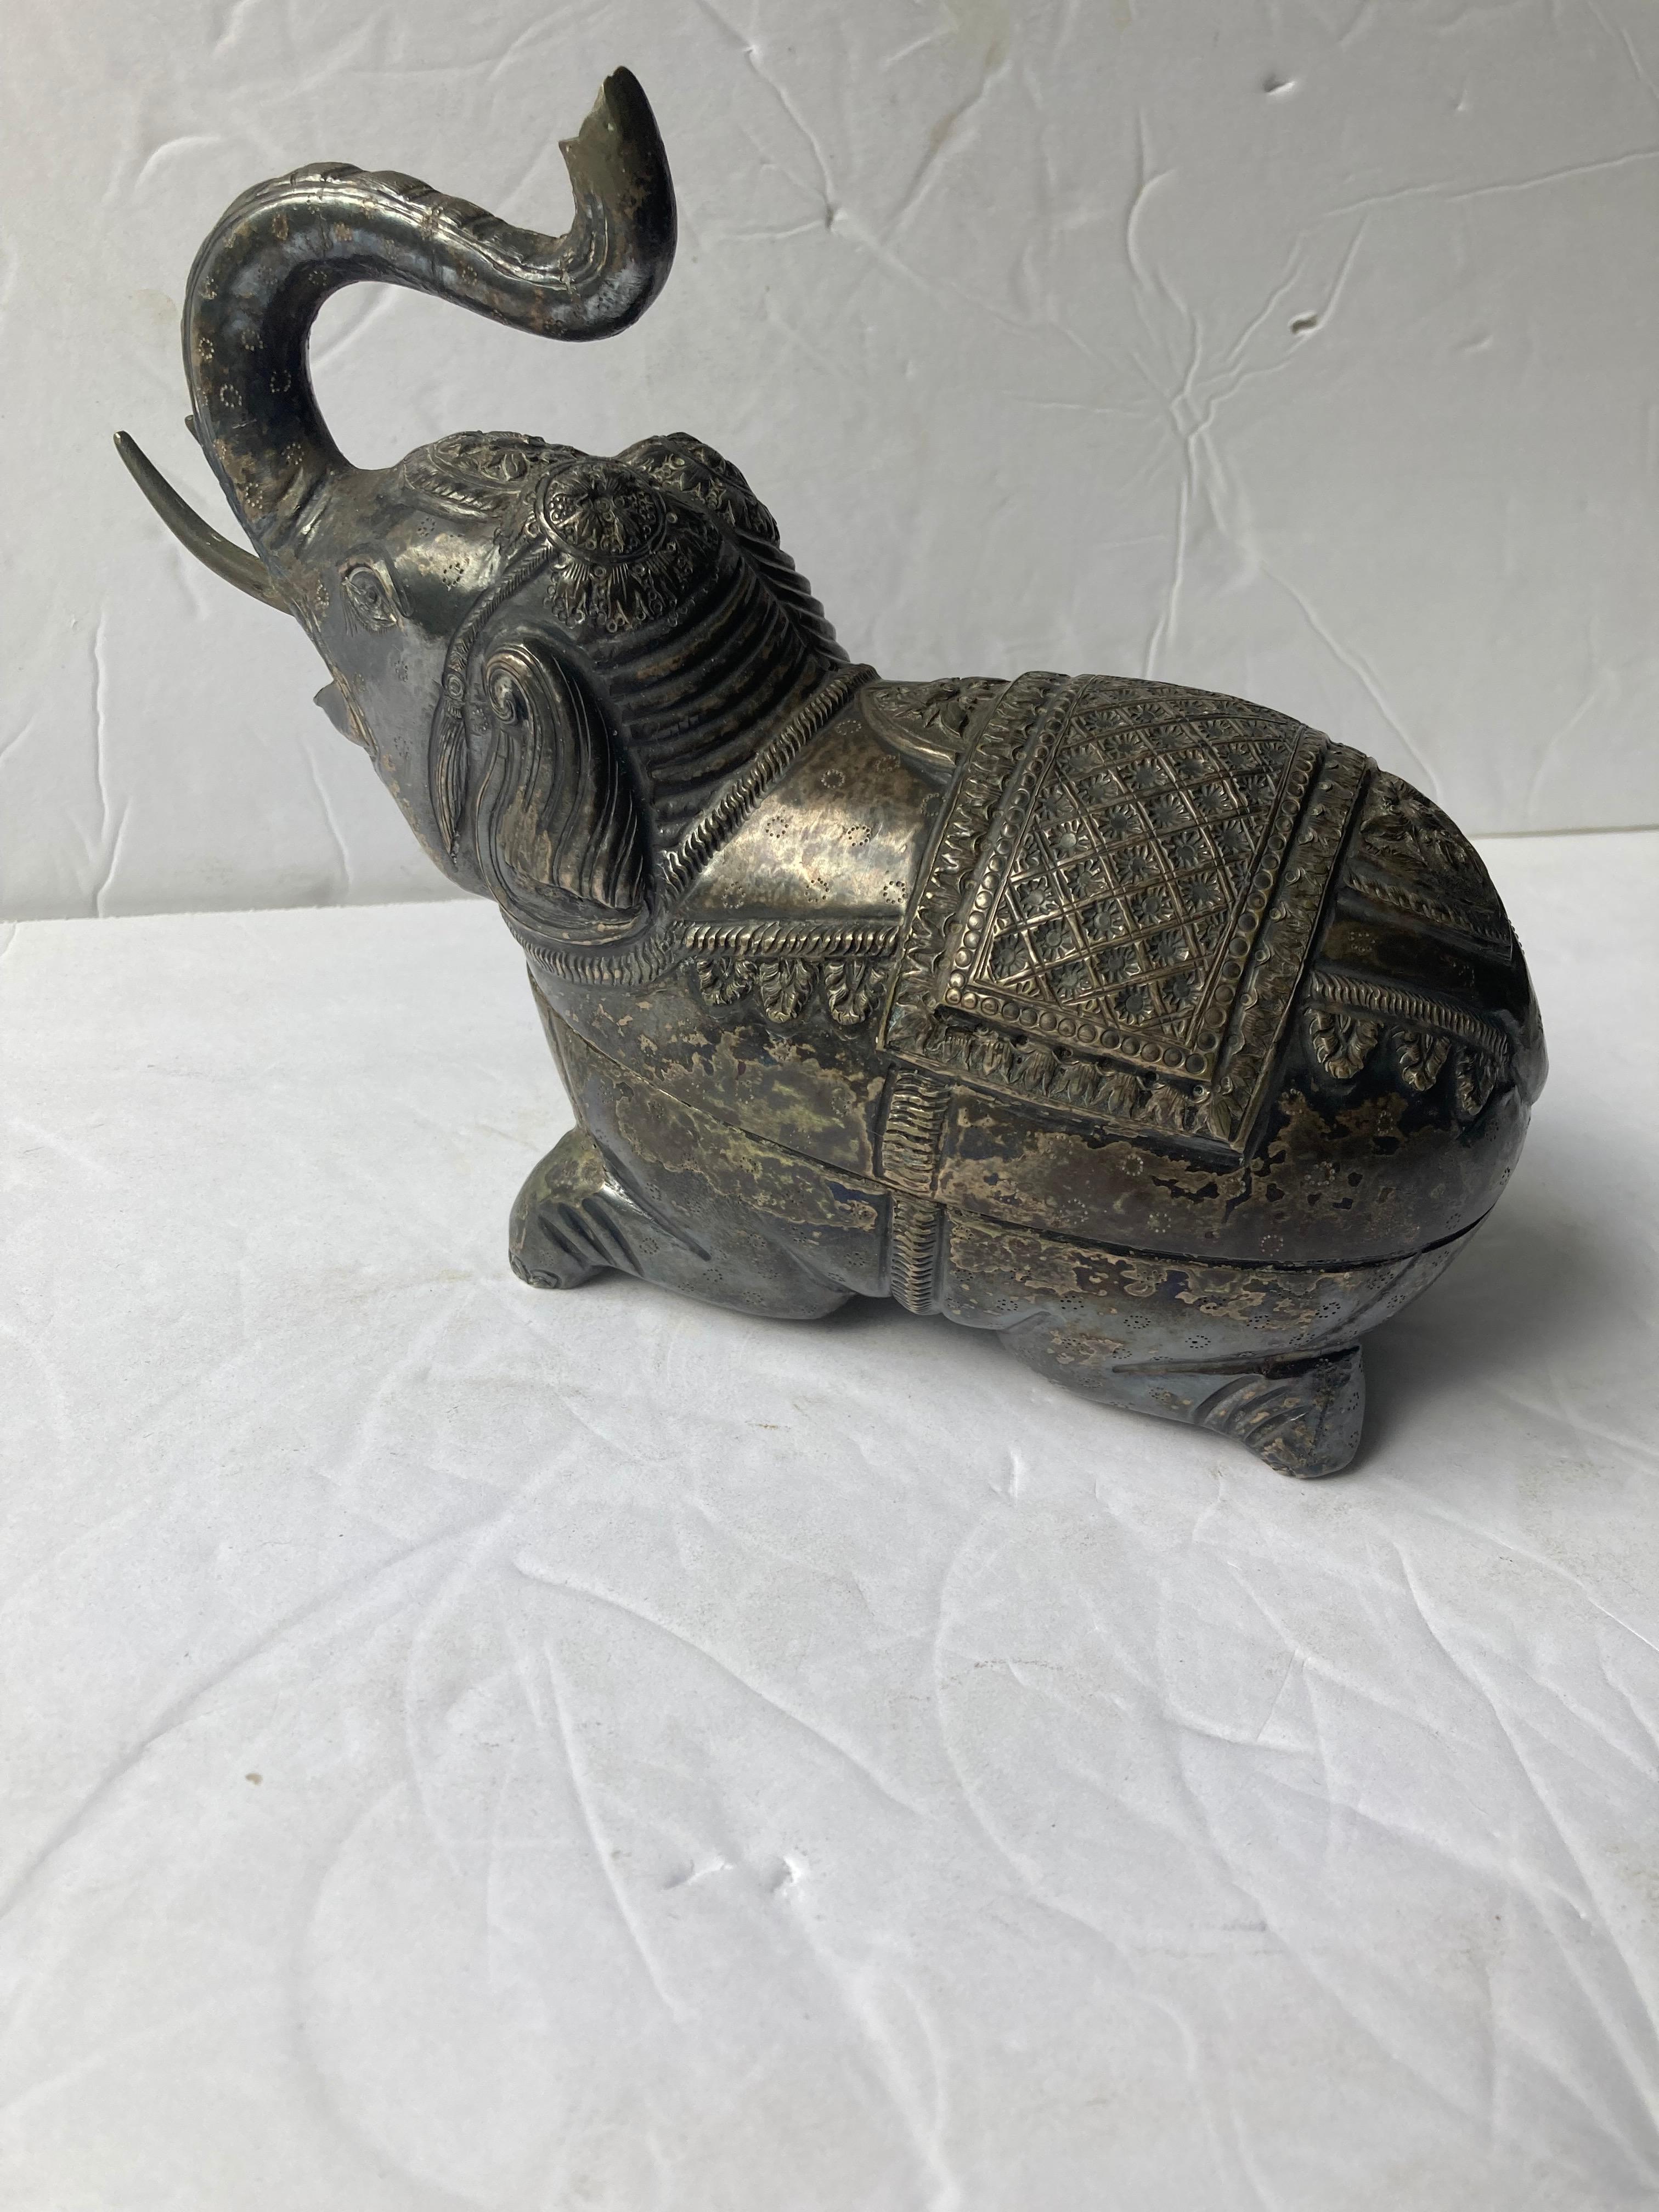 Schöne versilberte Metall-Box eines Elefanten in einem sehr traditionellen anglo-indischen Handwerk, Kunst. Hat eine erstaunliche Alterspatina im Kontrast mit dem Inneren, wie gezeigt.